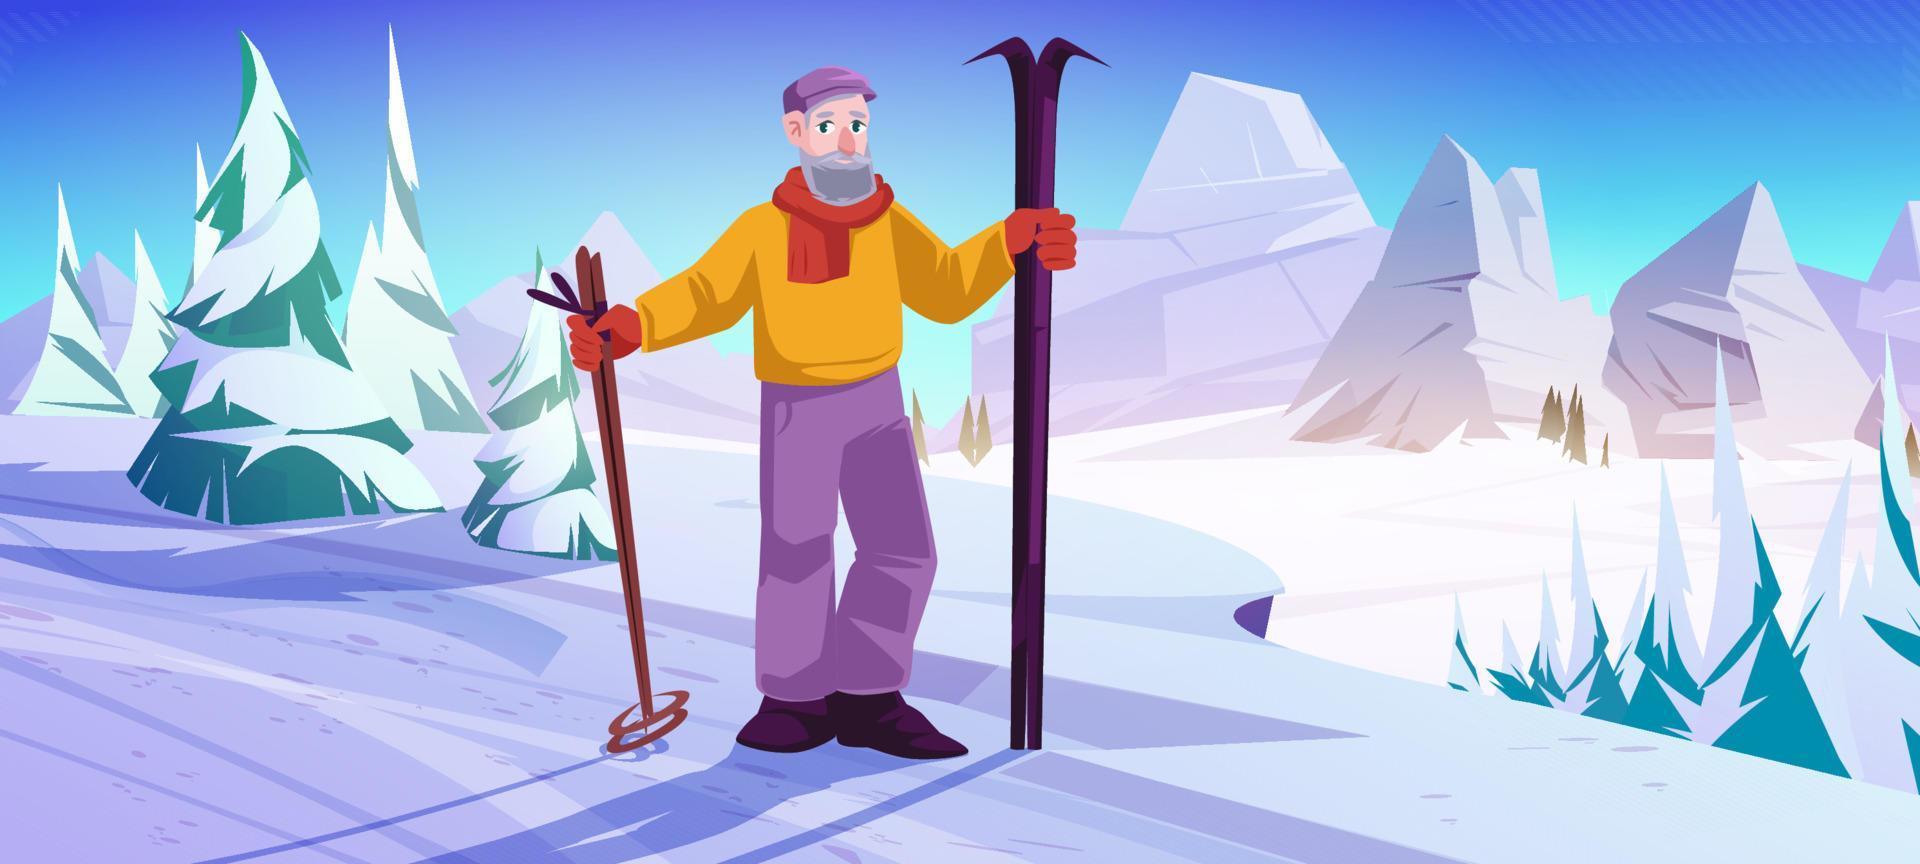 homem mais velho com esqui e varas ficar na encosta de neve vetor